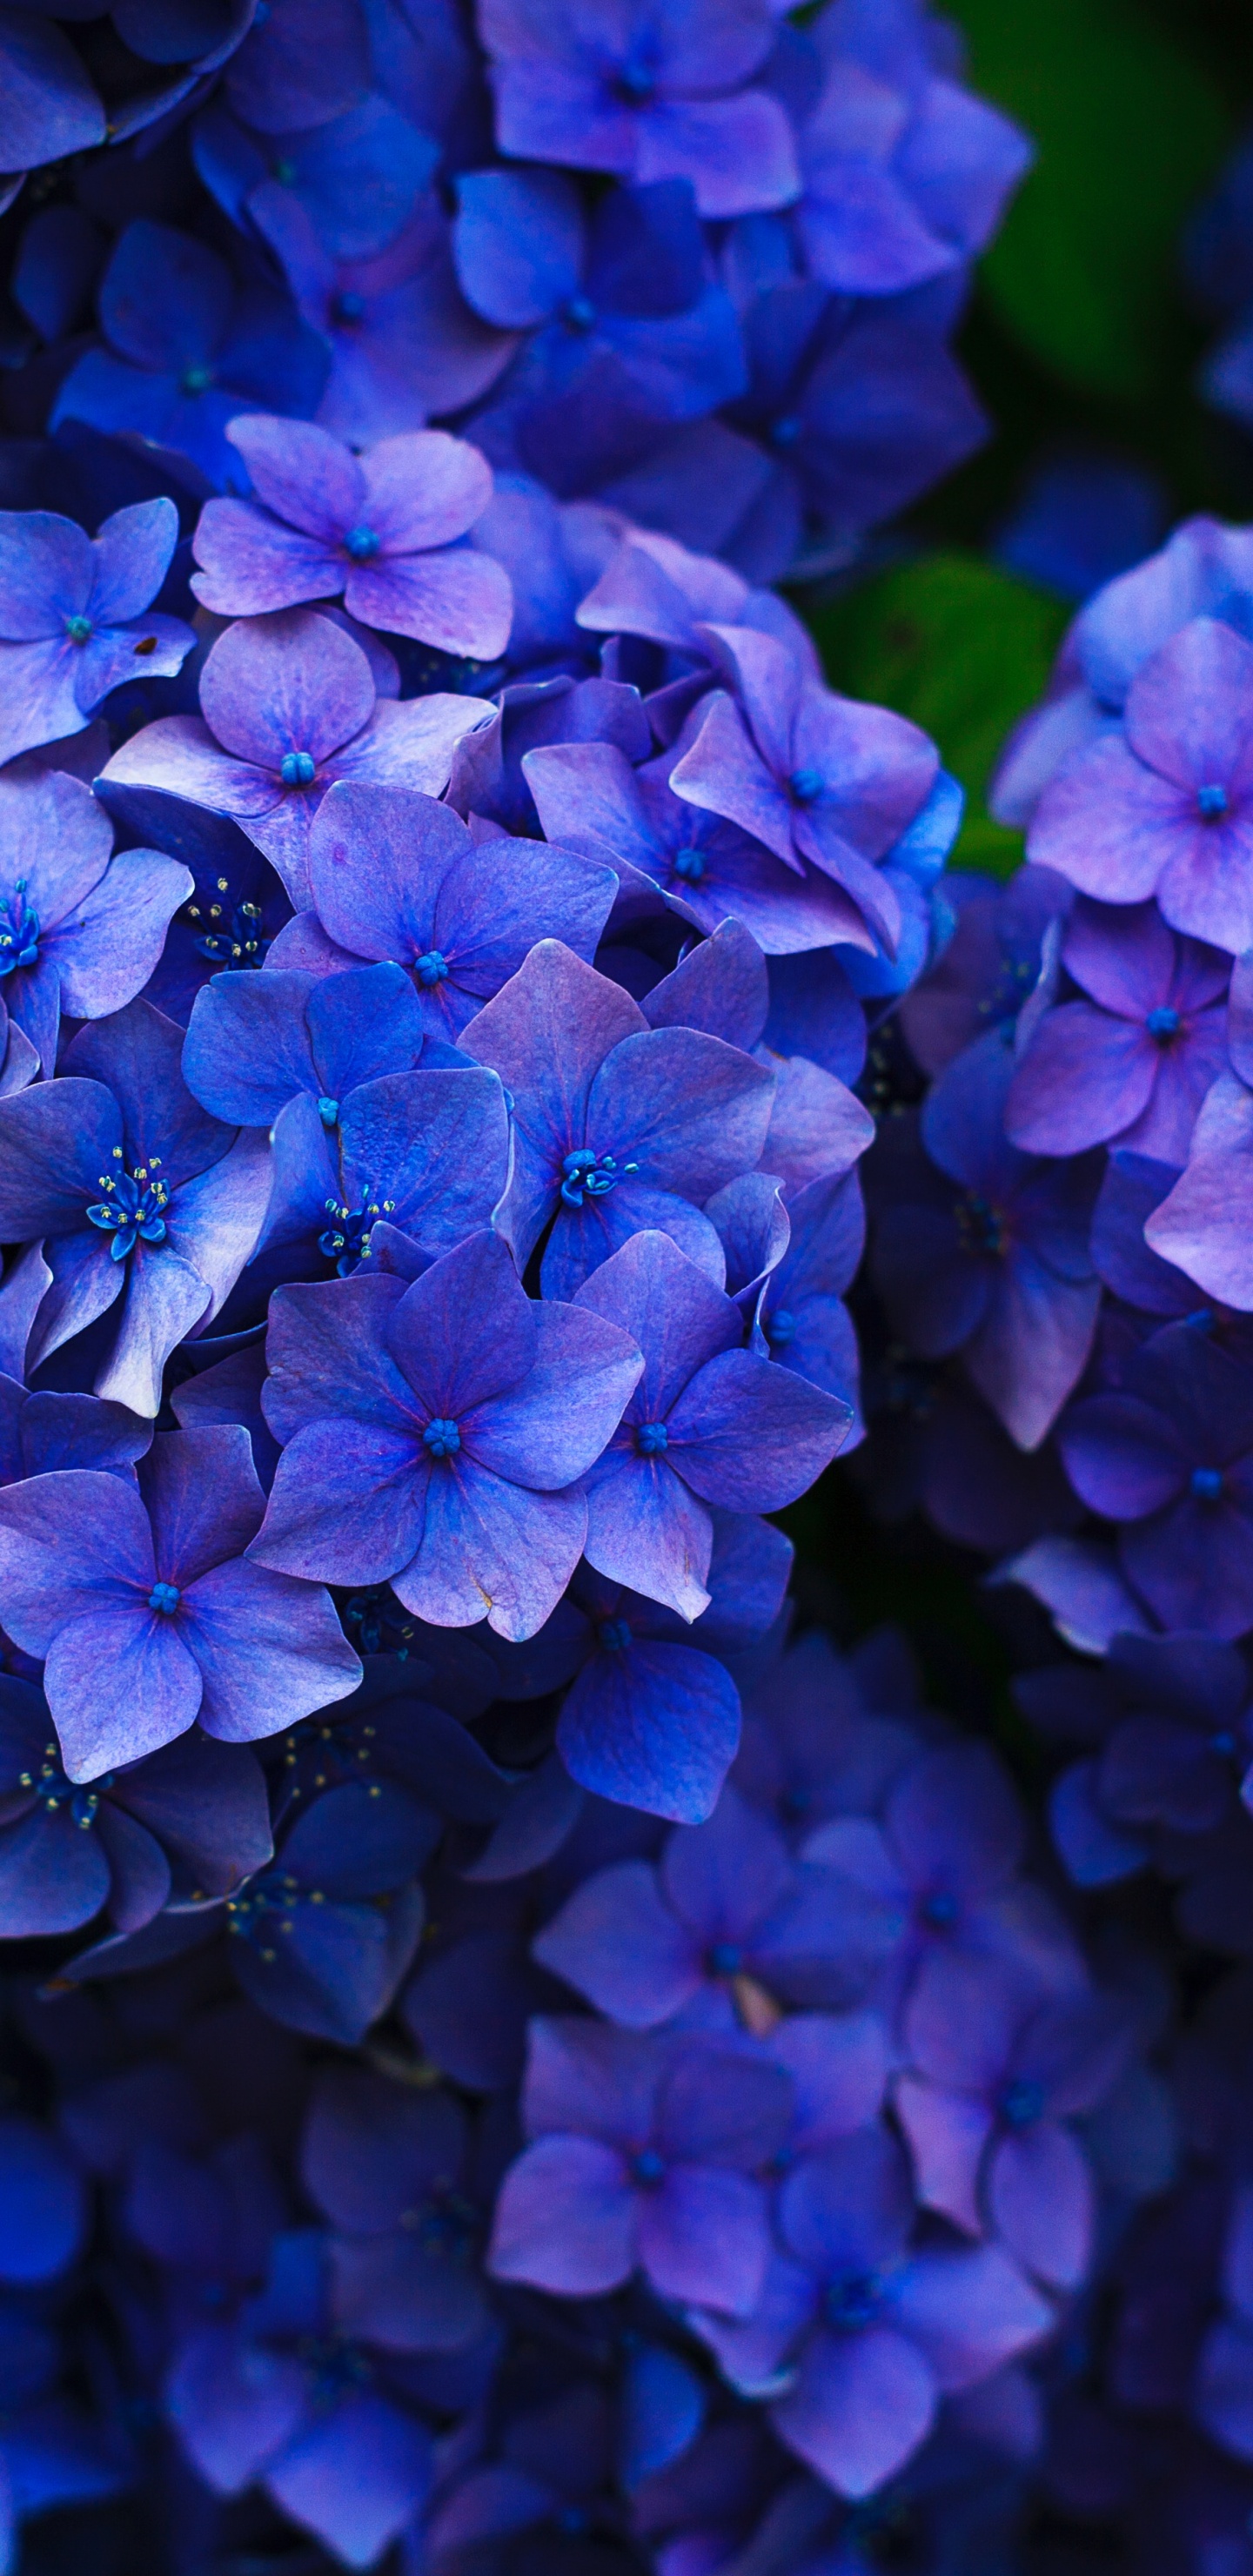 法国的绣球花, 灌木, 钴蓝色的, 紫色的, 紫罗兰色 壁纸 1440x2960 允许